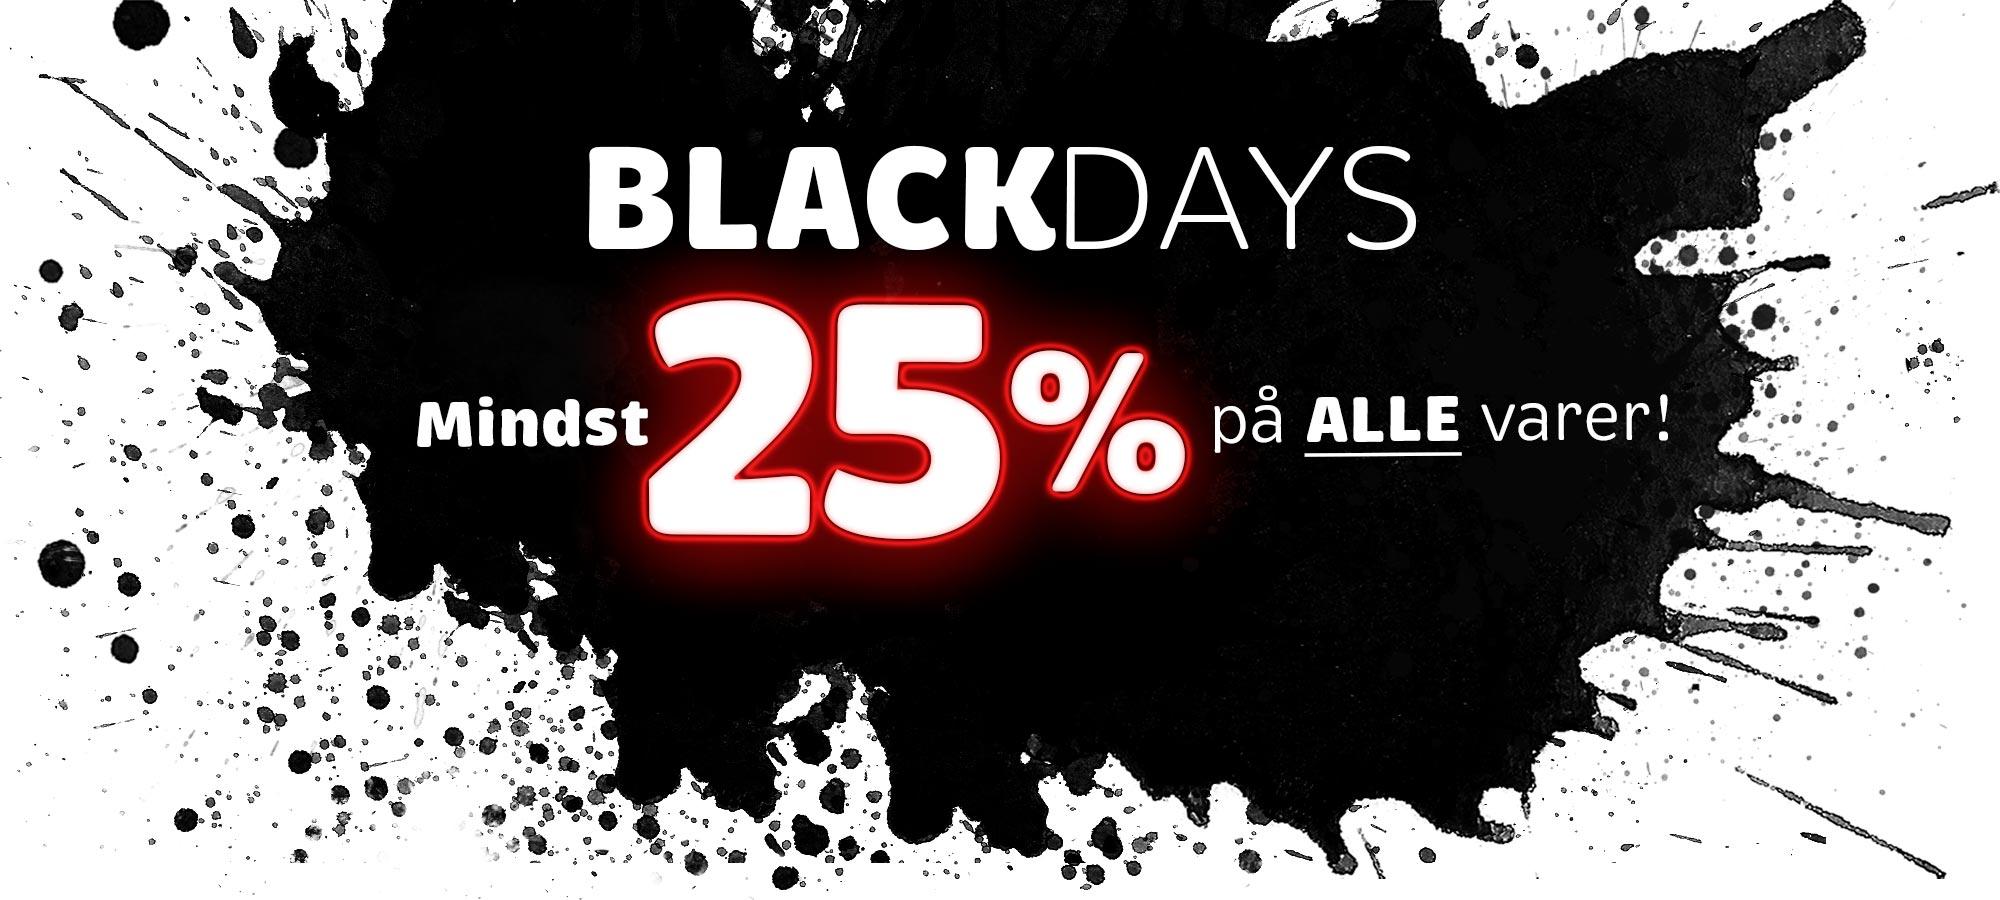 Black friday, black days 25%